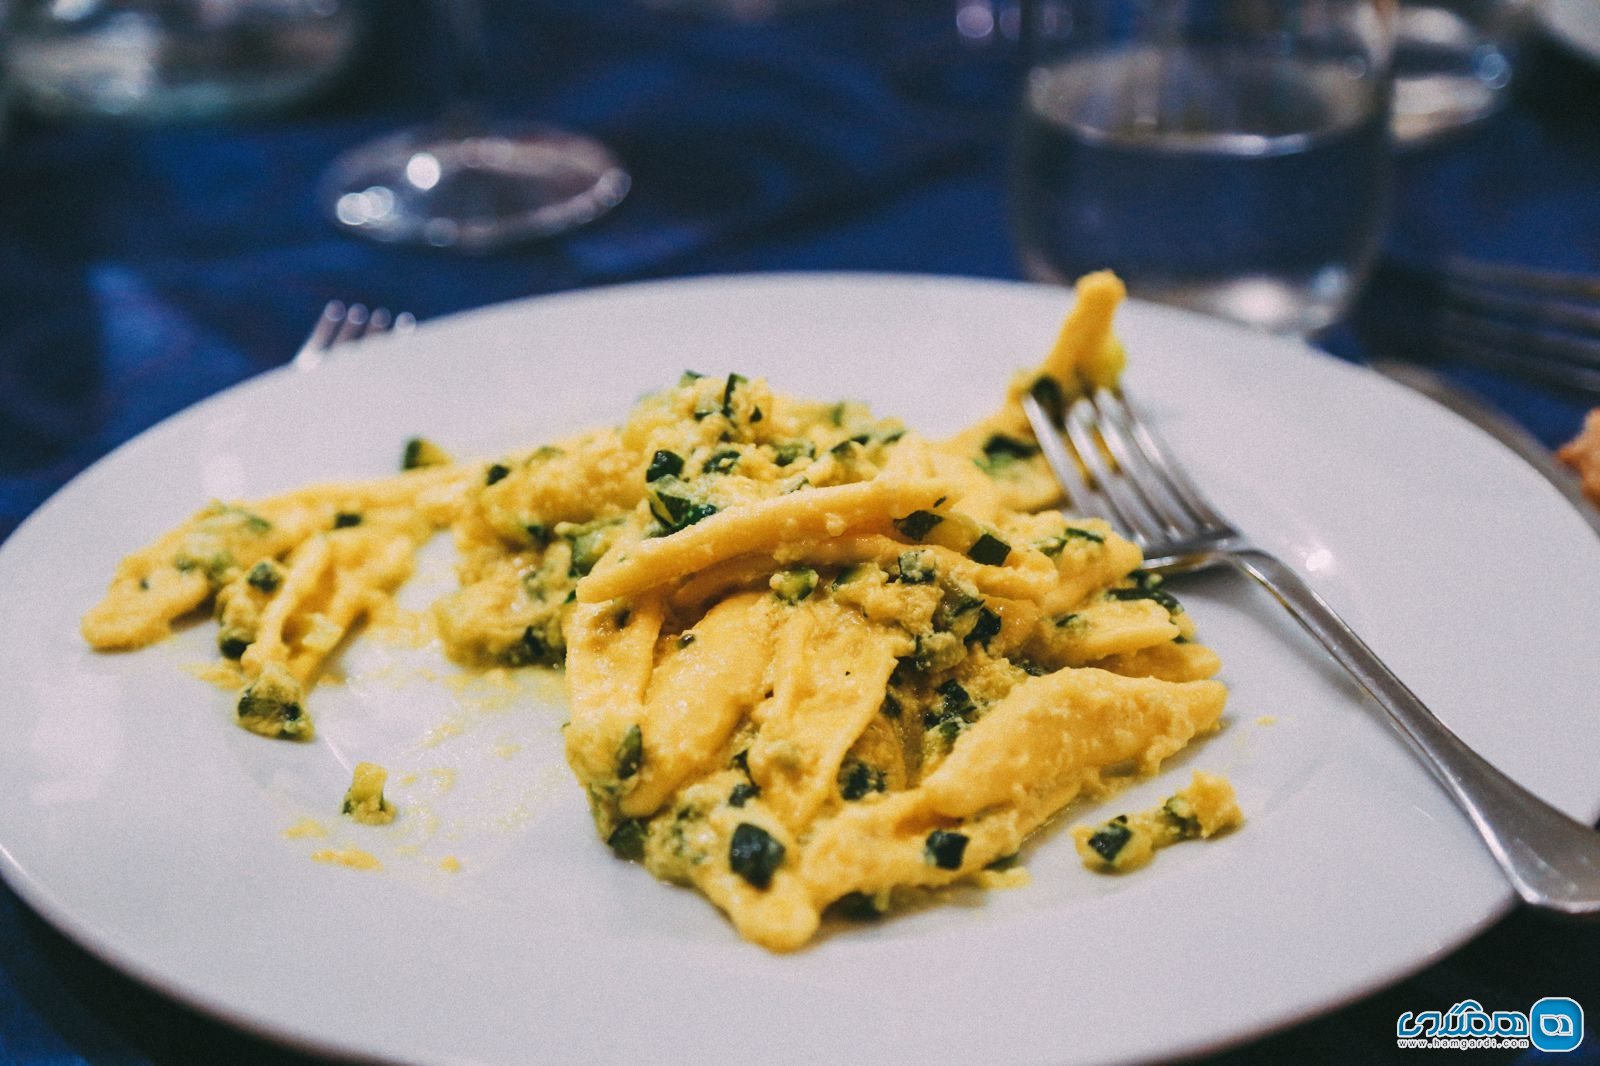 دانستنیهای سفر به ایتالیا | پاک کردن ظرف بعد از خوردن اسپاگتی ضروری است